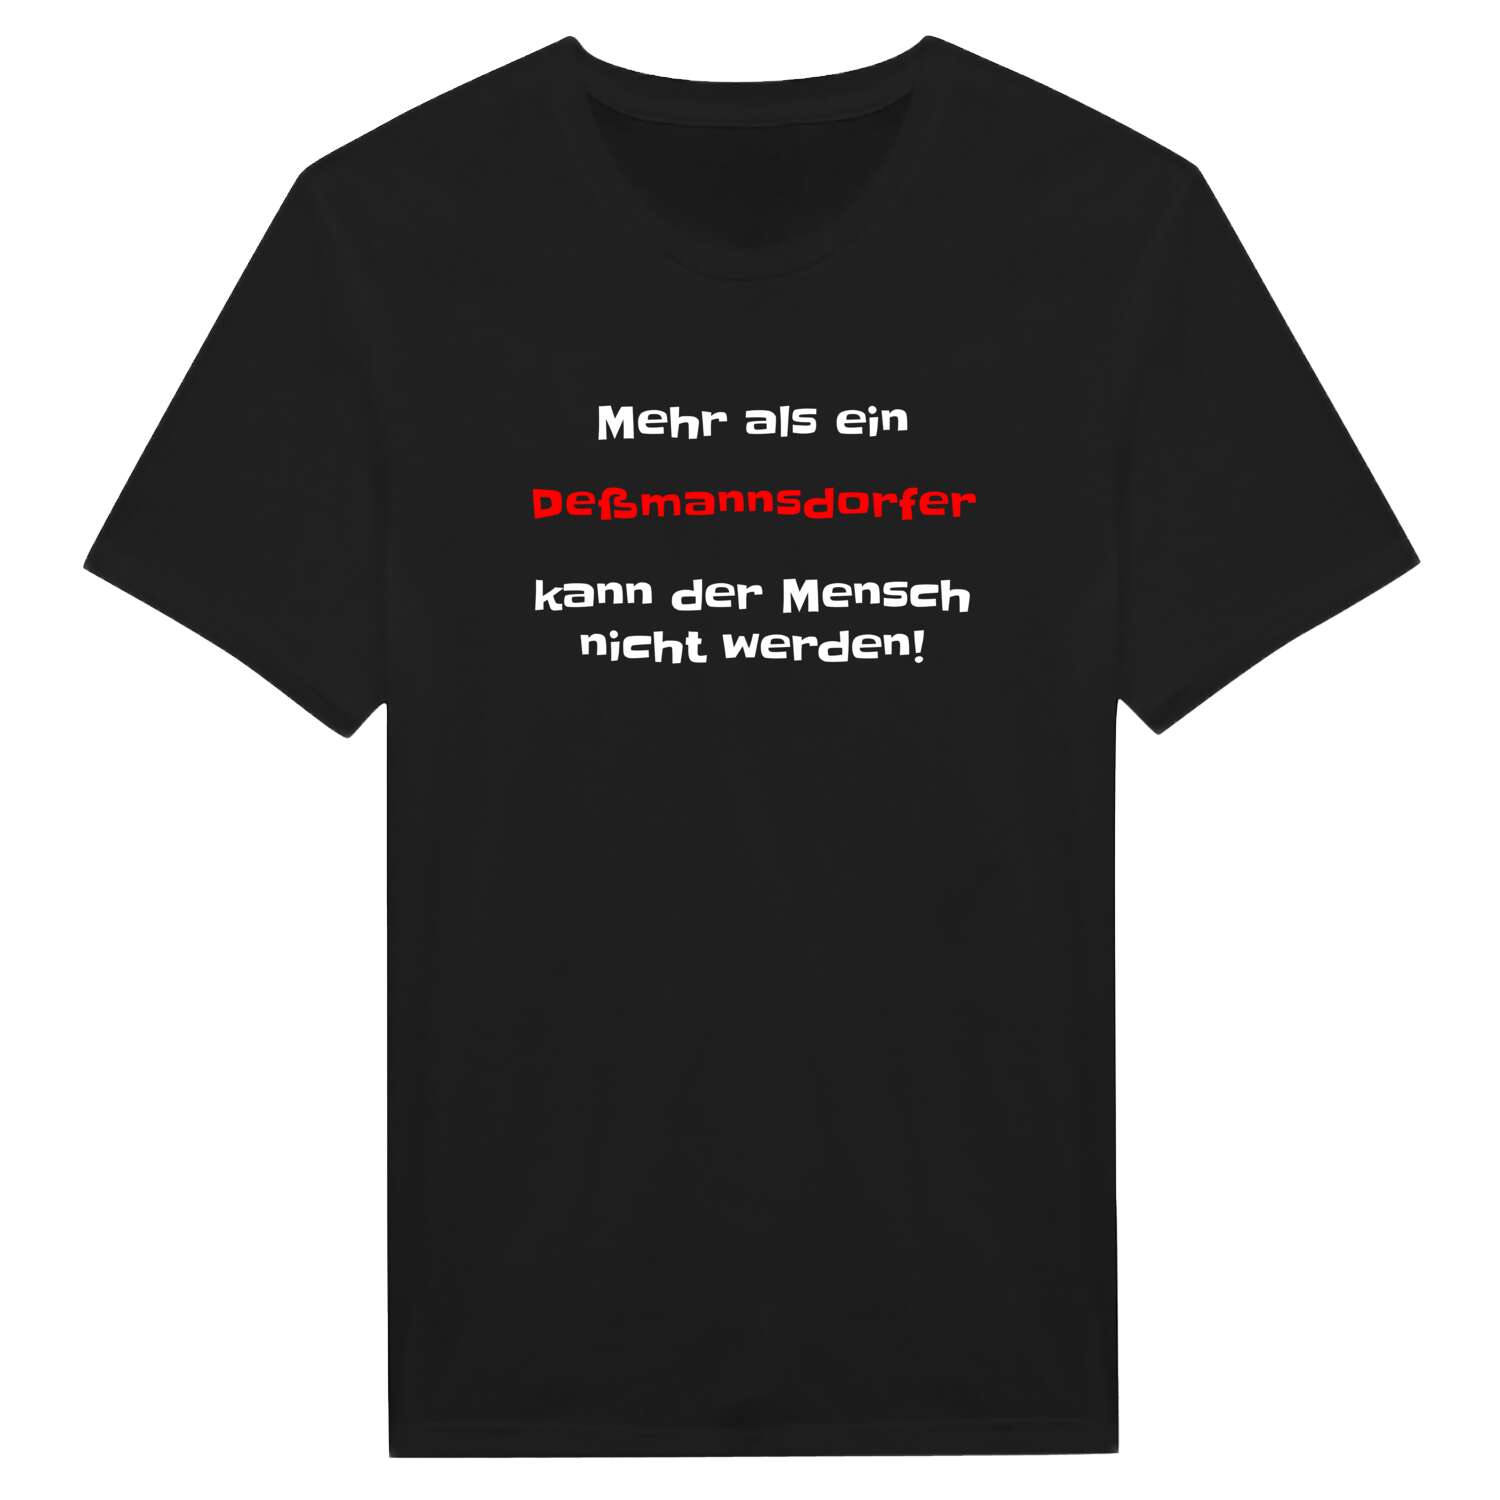 Deßmannsdorf T-Shirt »Mehr als ein«